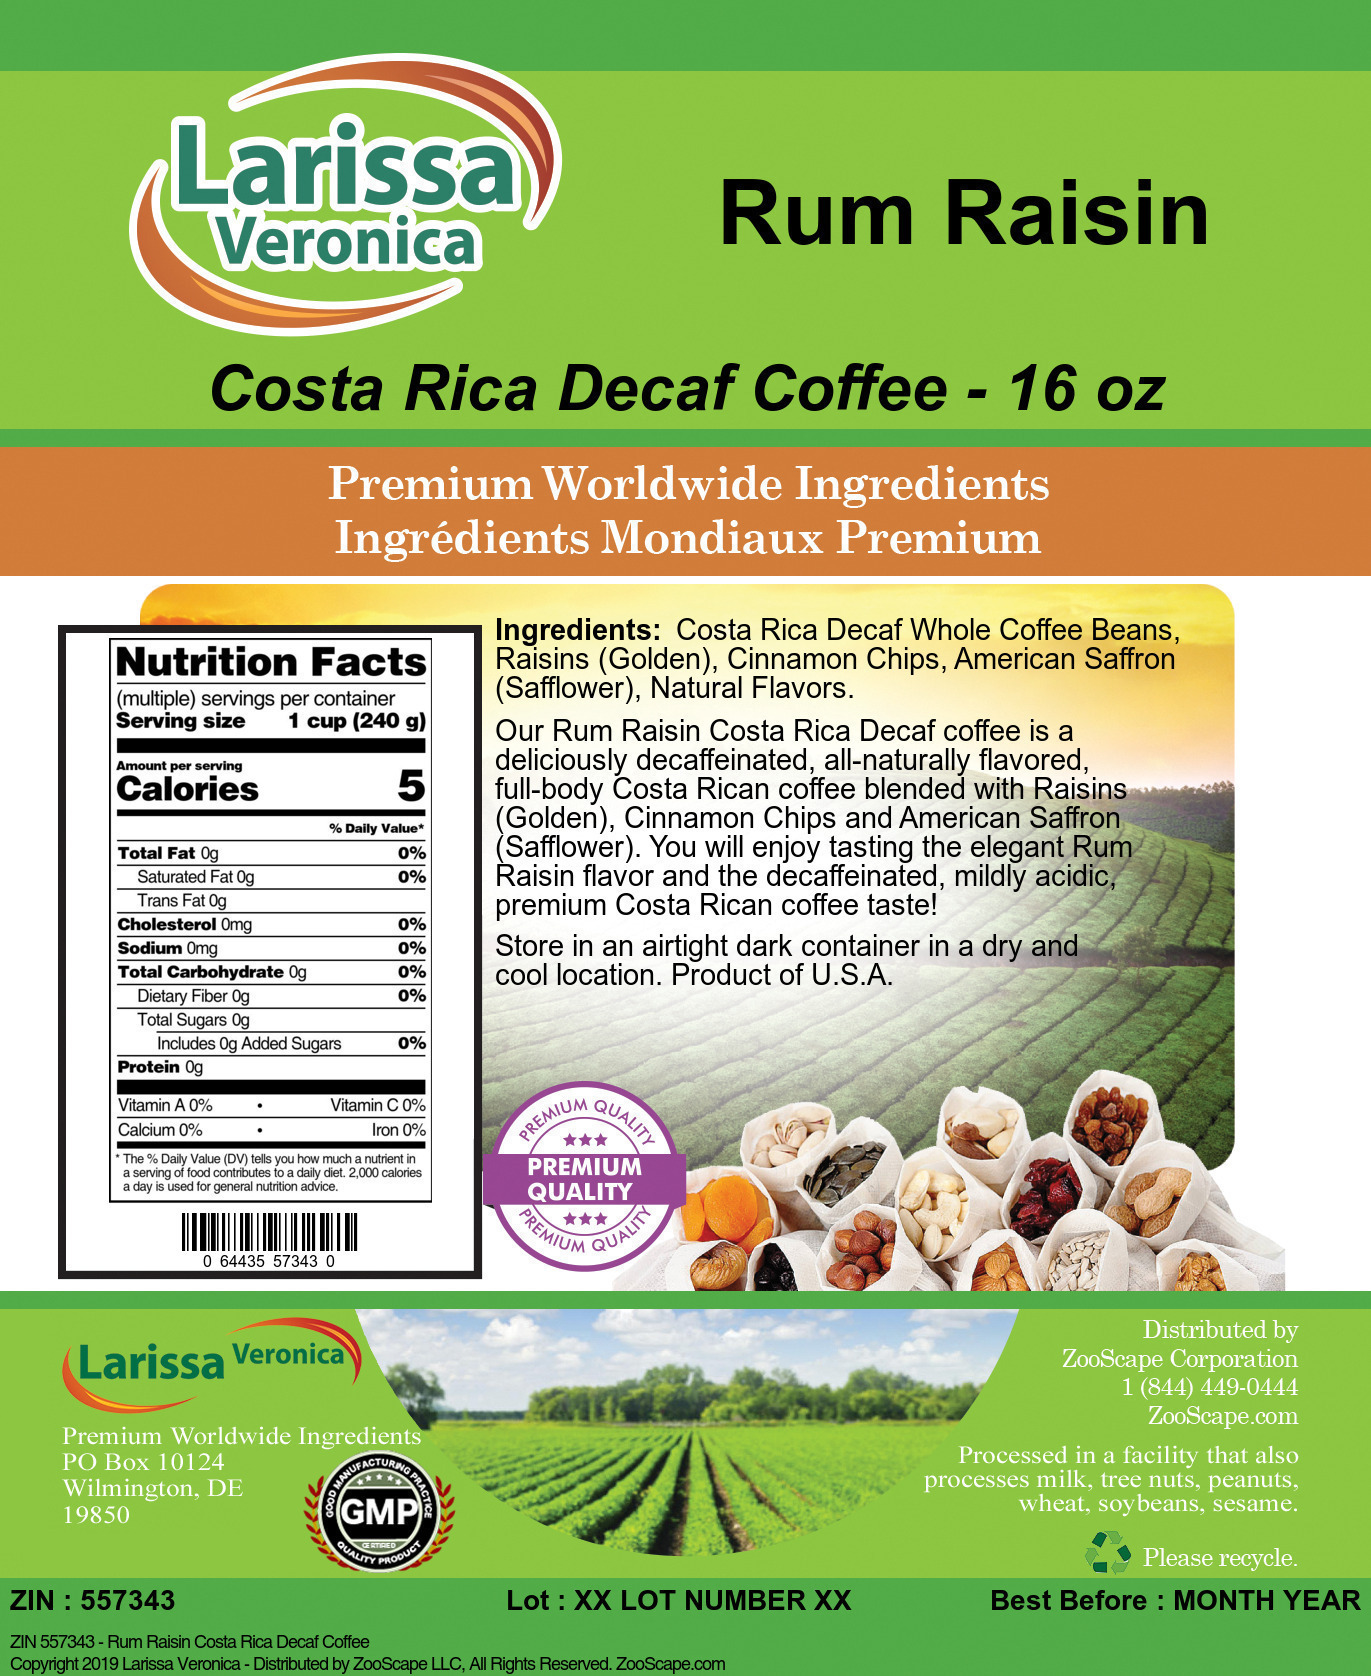 Rum Raisin Costa Rica Decaf Coffee - Label